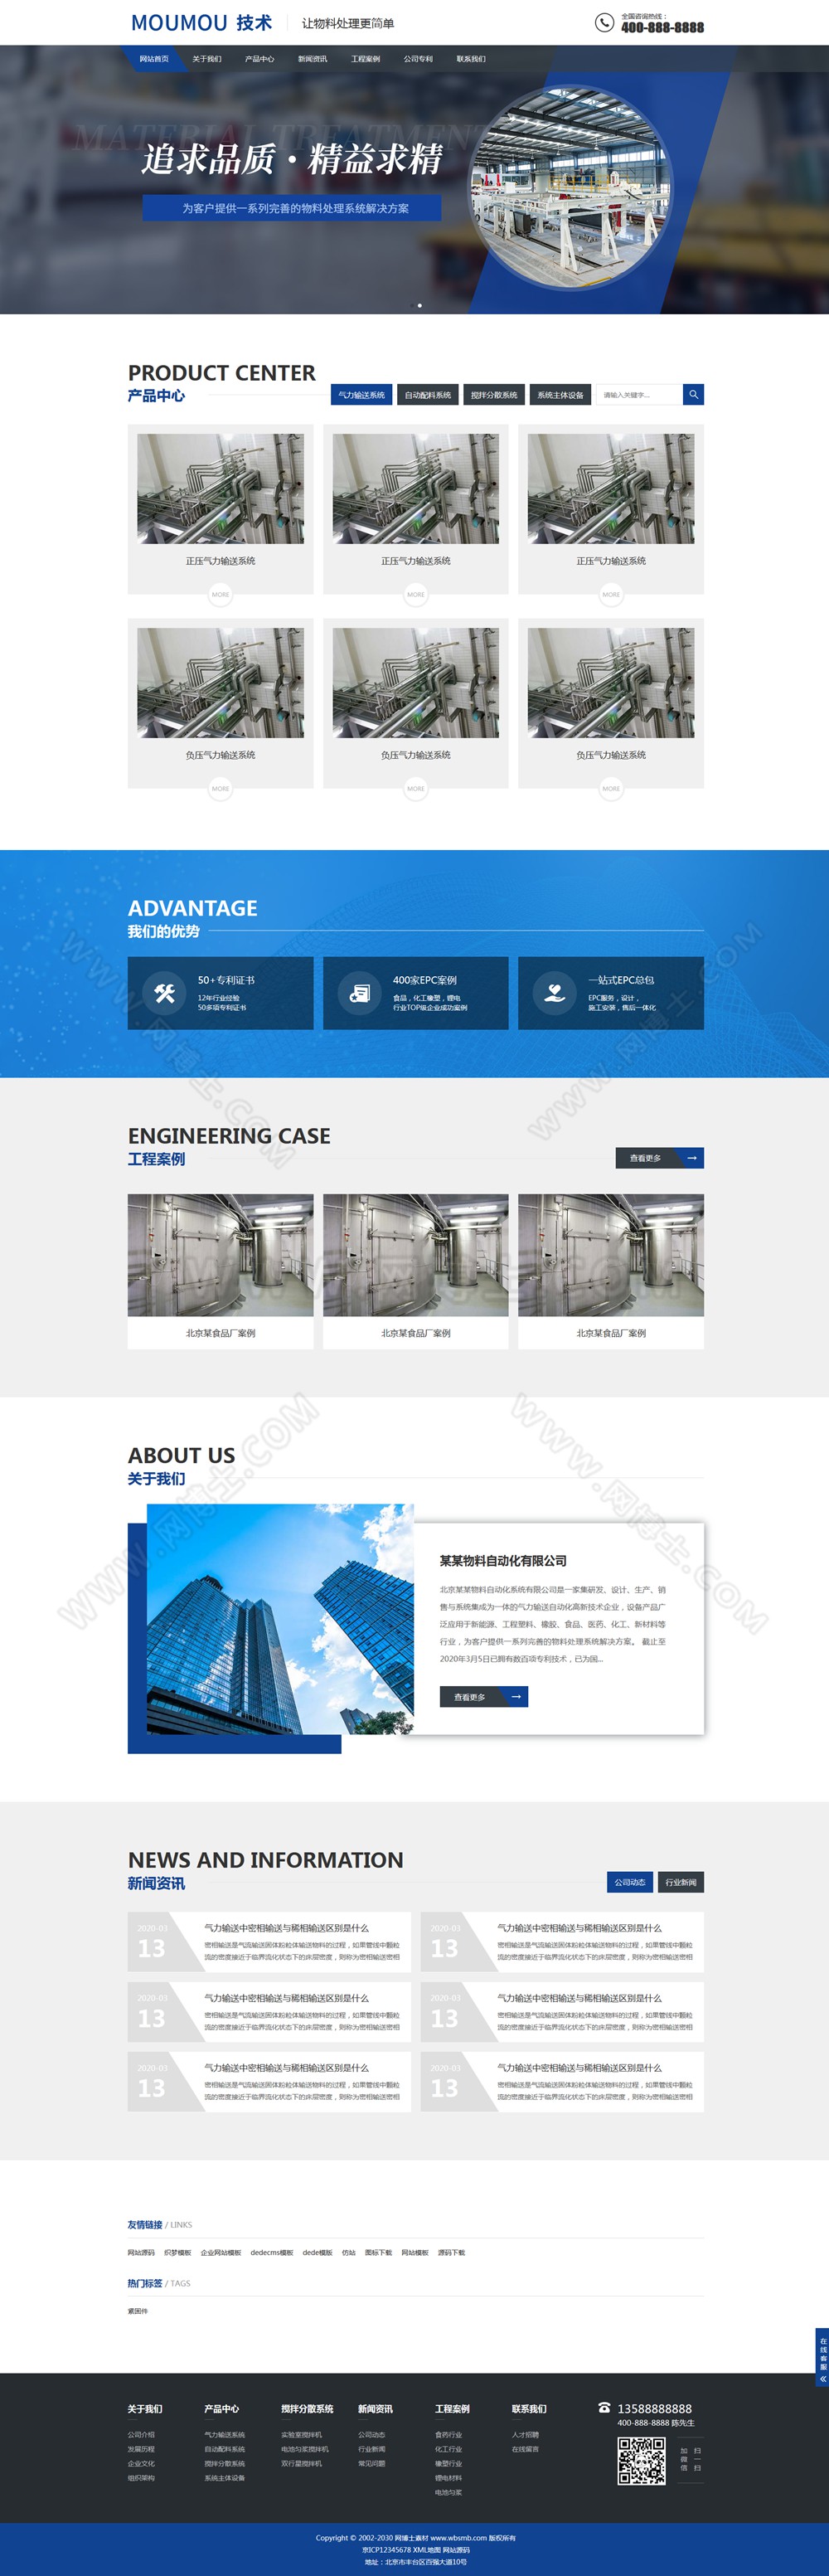 (自适应手机版)响应式物料自动化机械加工类网站织梦模板 html5蓝色营销型机械设备网站